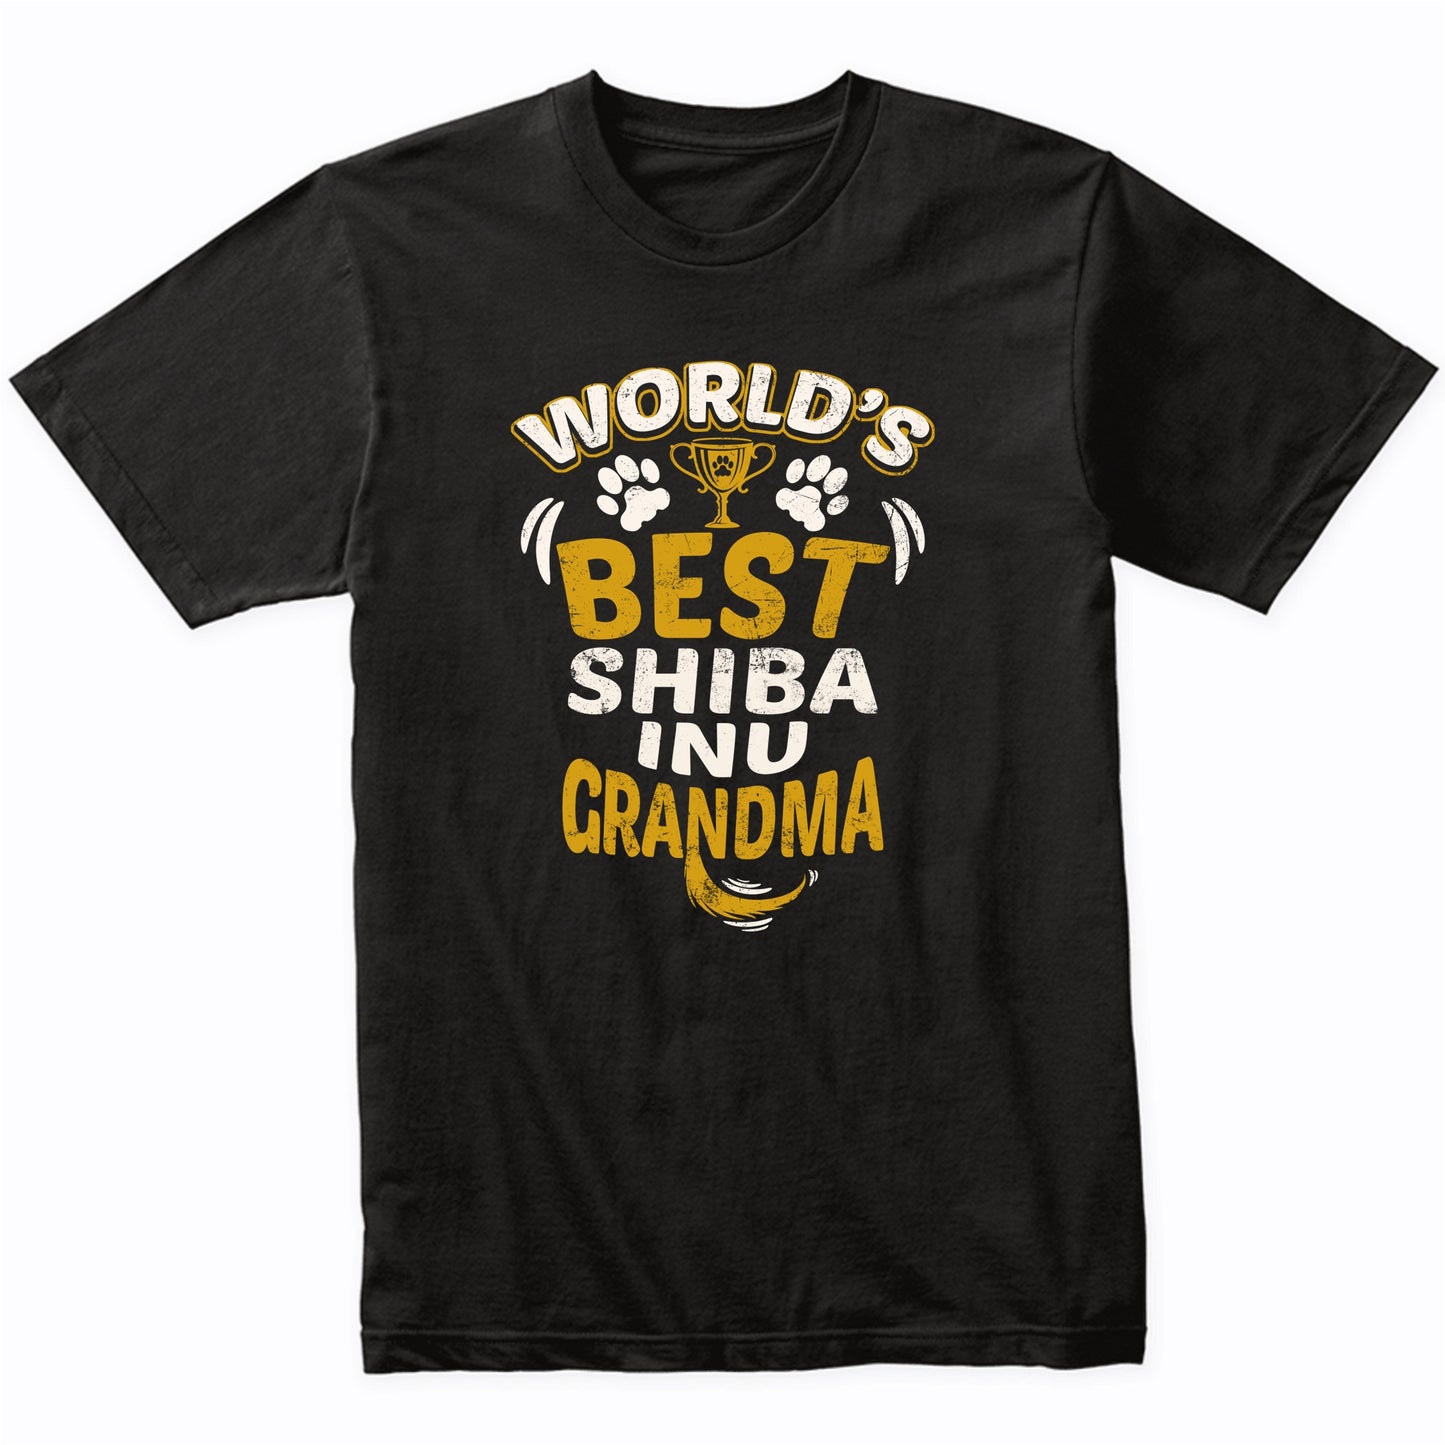 World's Best Shiba Inu Grandma Graphic T-Shirt